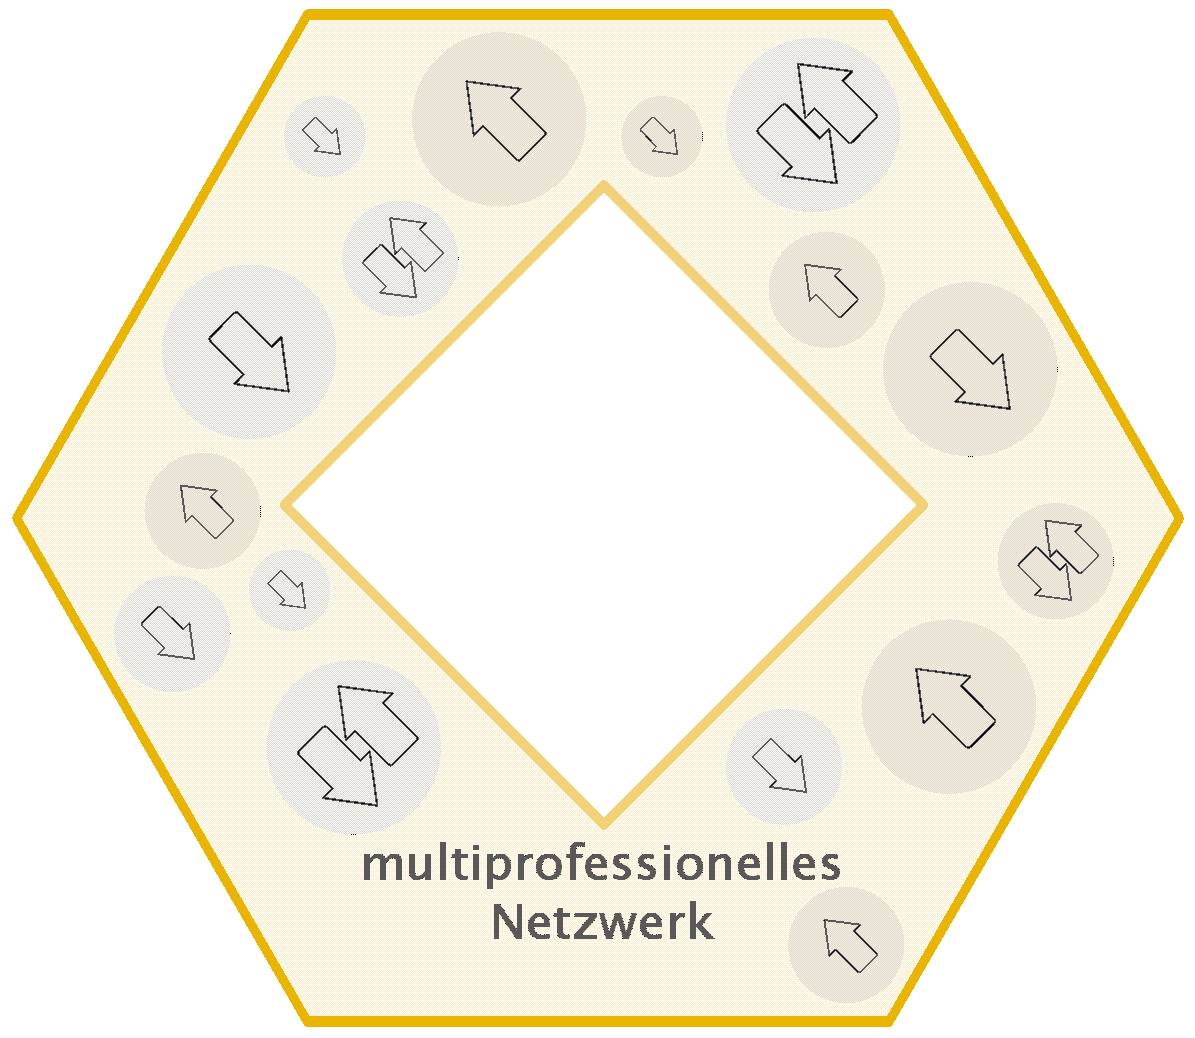 Grafik Multiprofessionelles Netzwerk